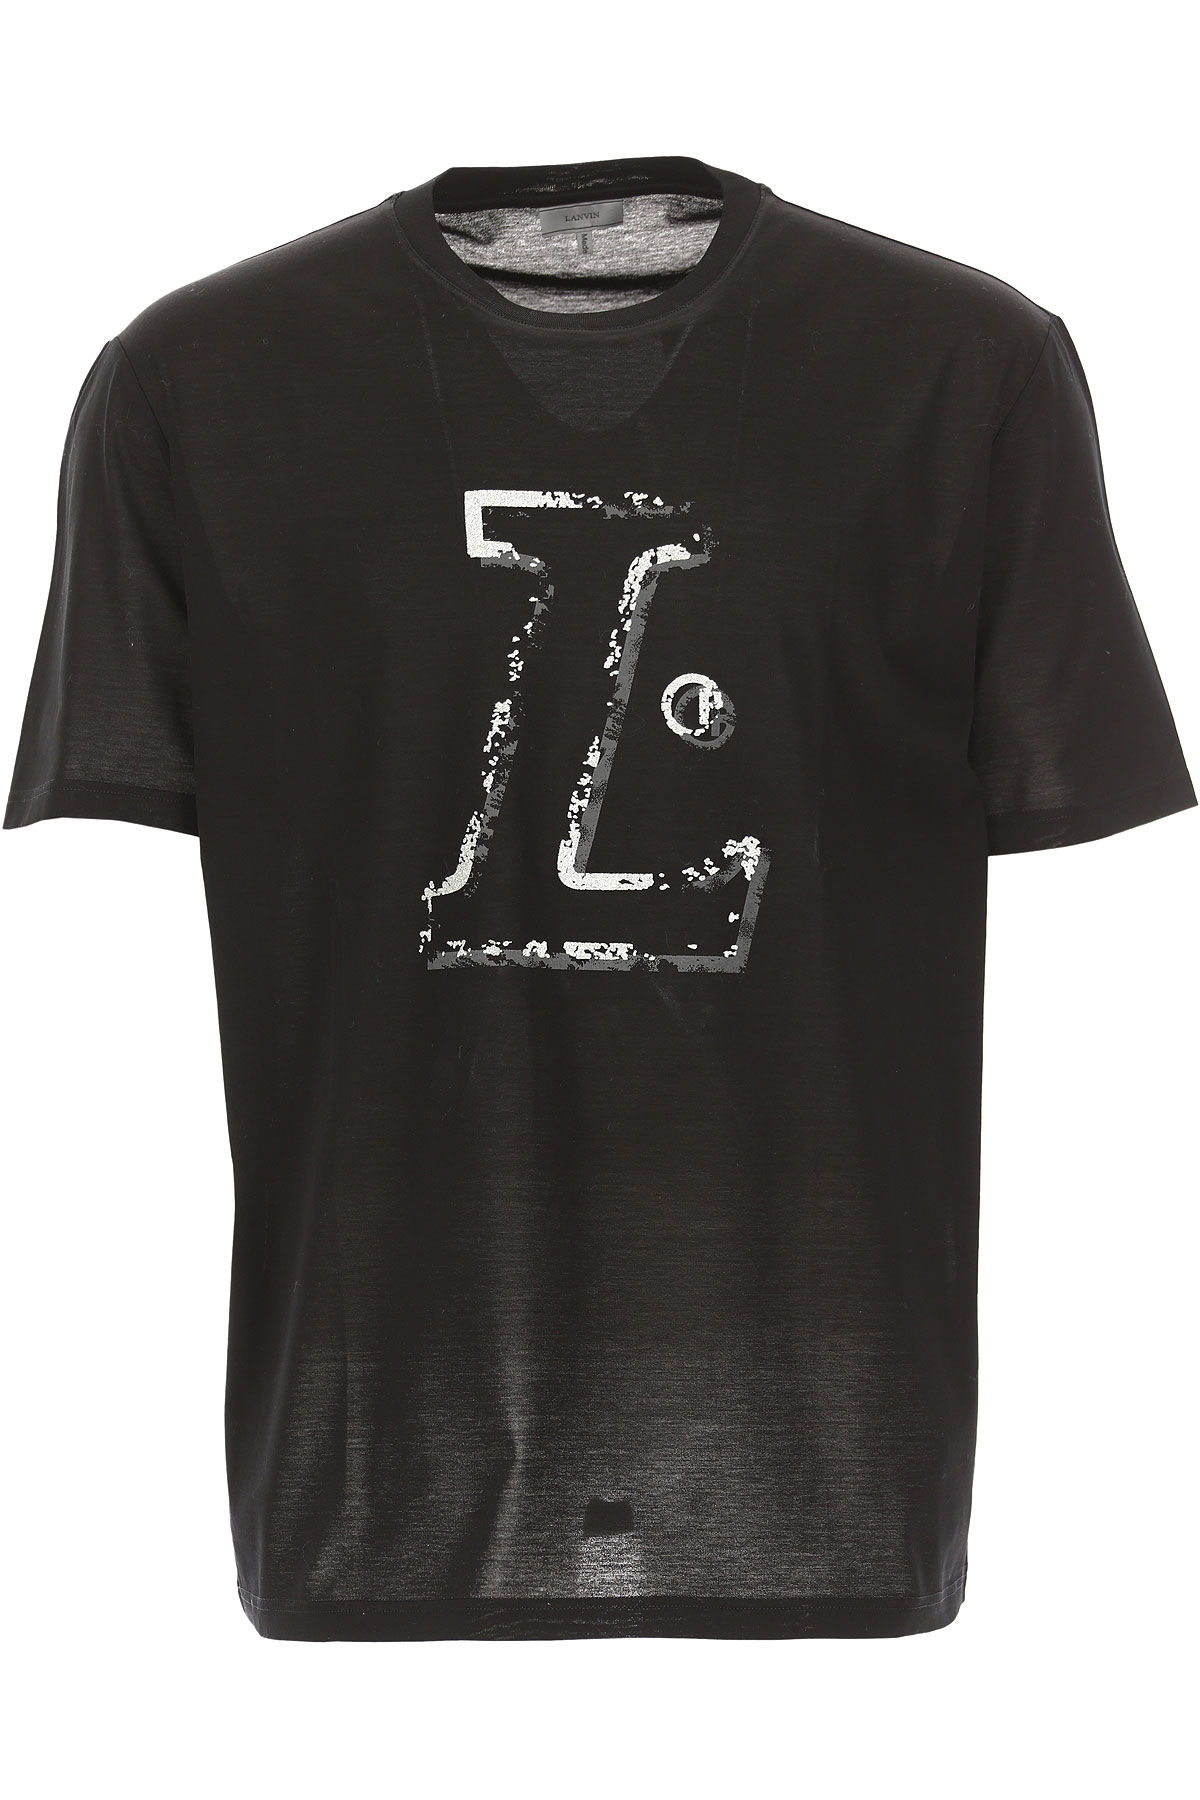 Lanvin T-shirt Homme, Noir, Coton, 2017, L M S XL